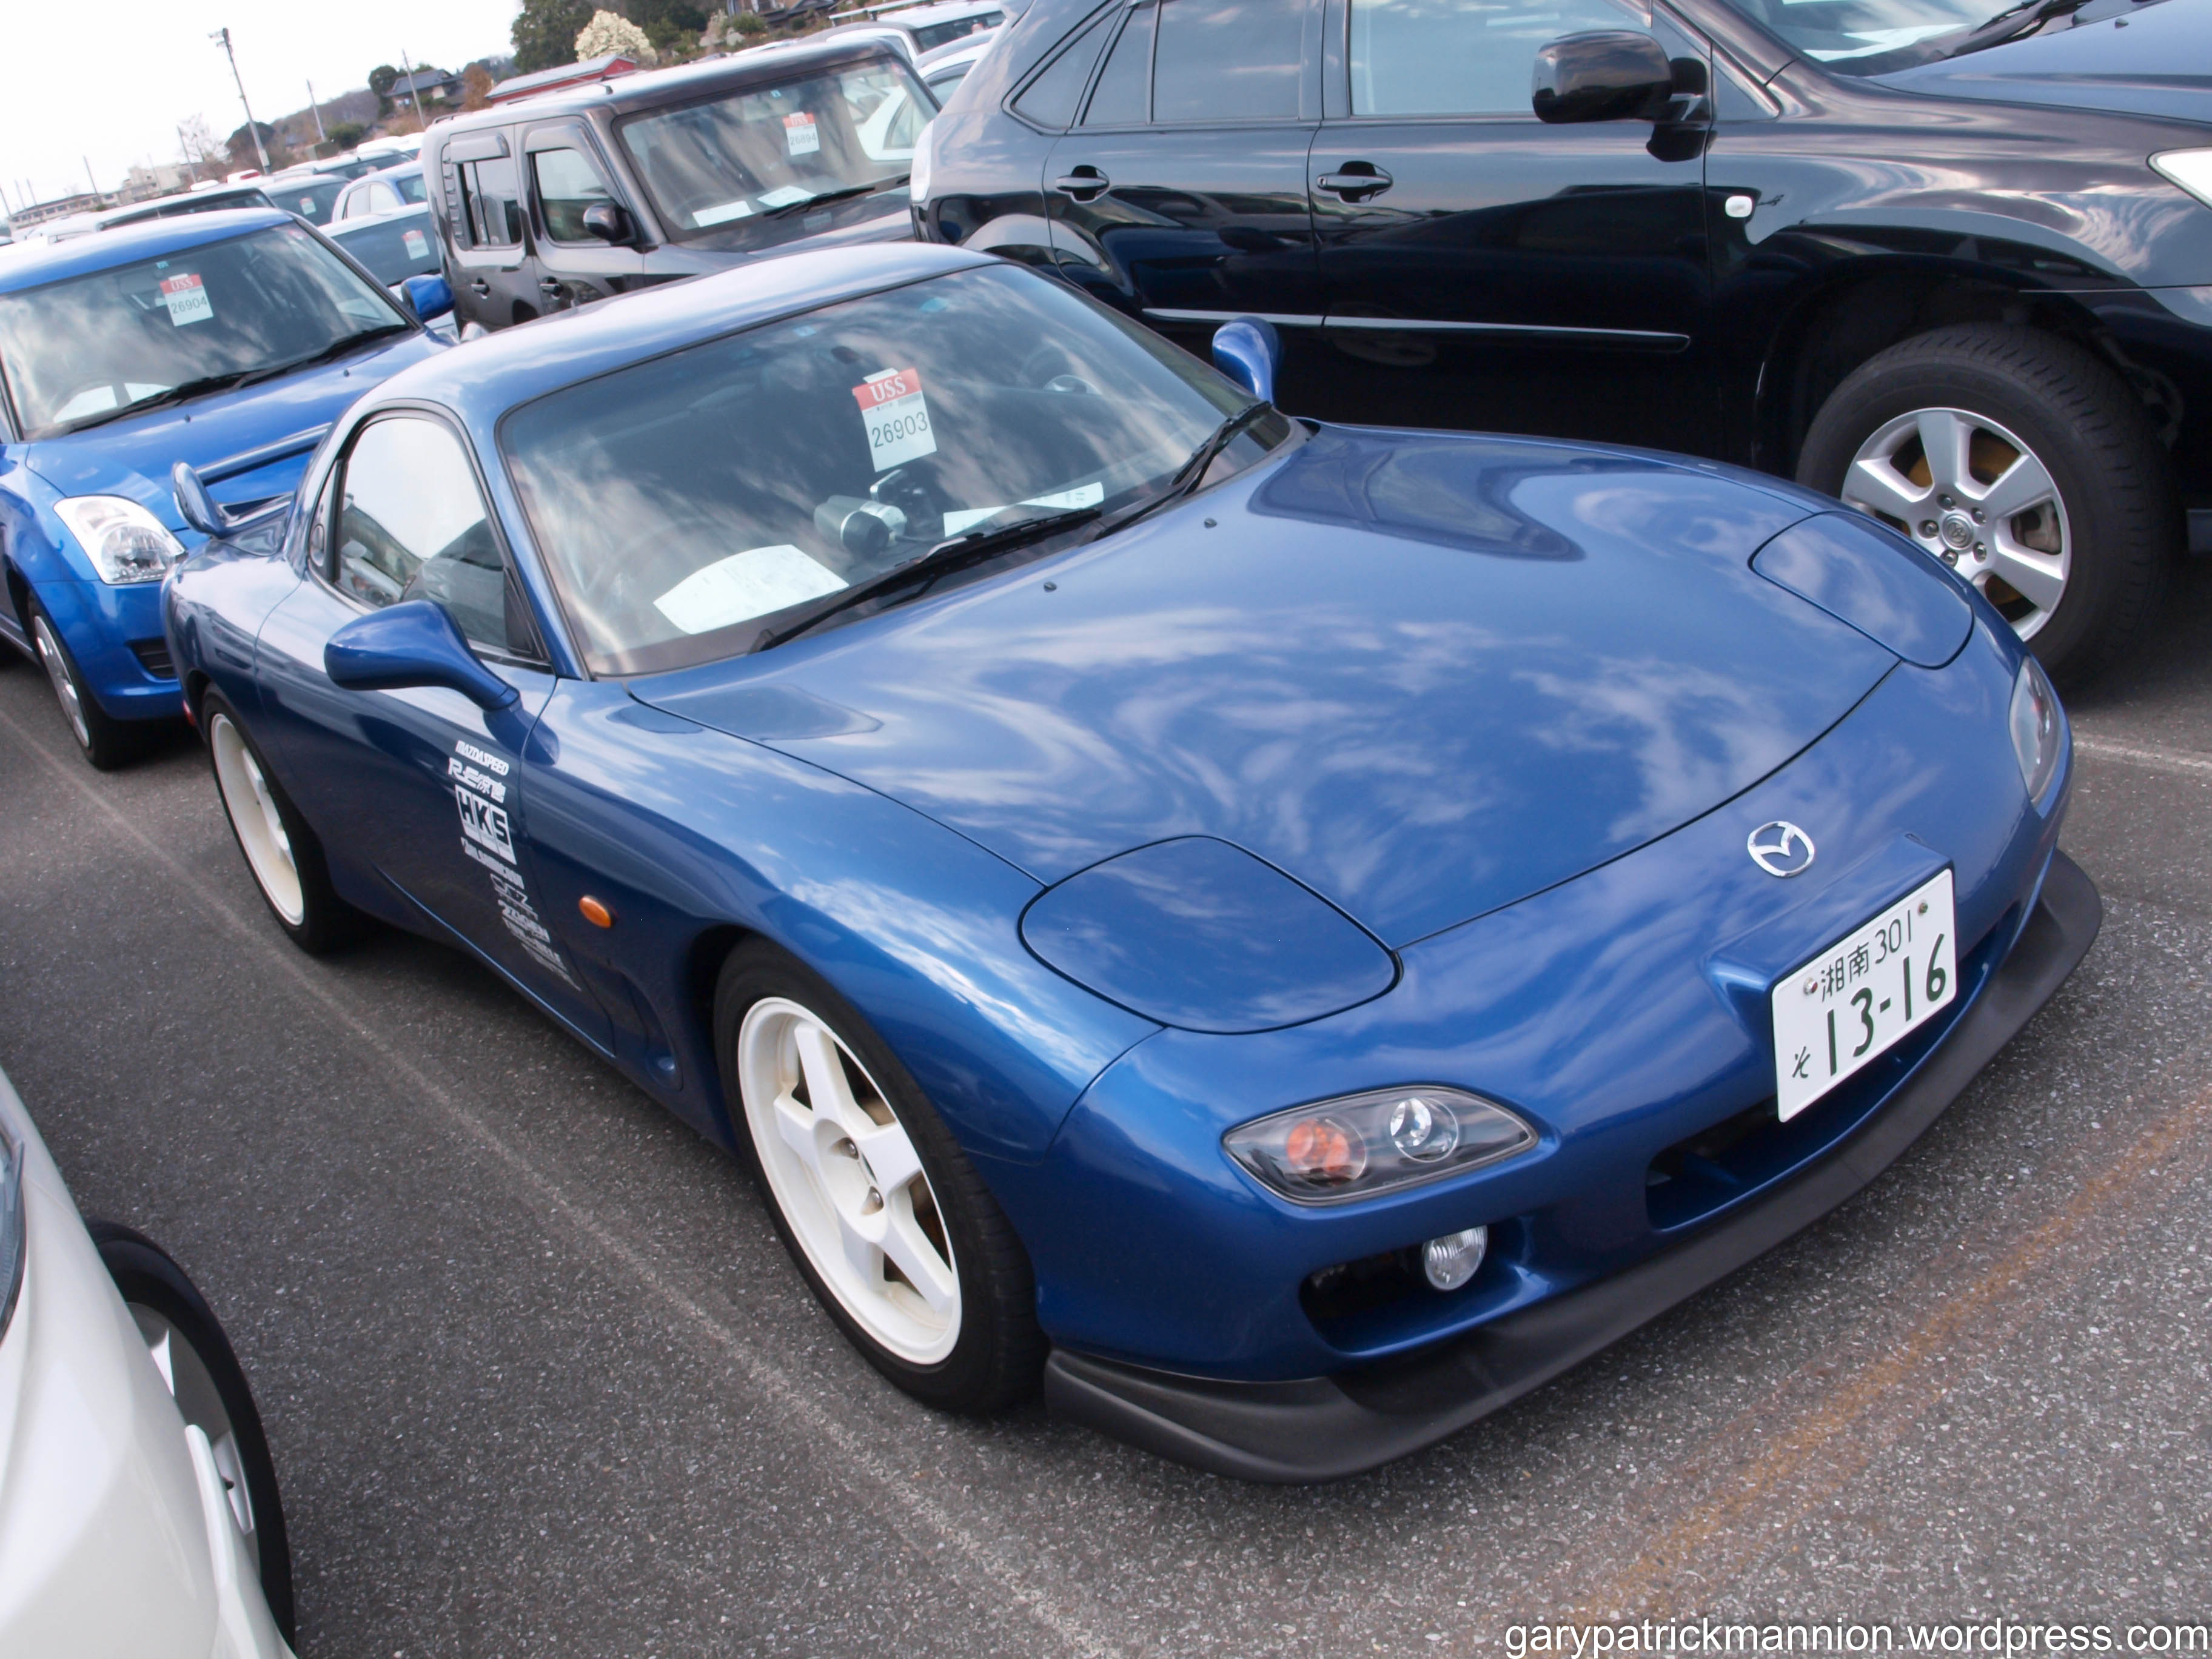 Японские автомобили б. Машины (синяя). Авто из Японии. Японский праворульный автомобиль. Япония праворульные машины.